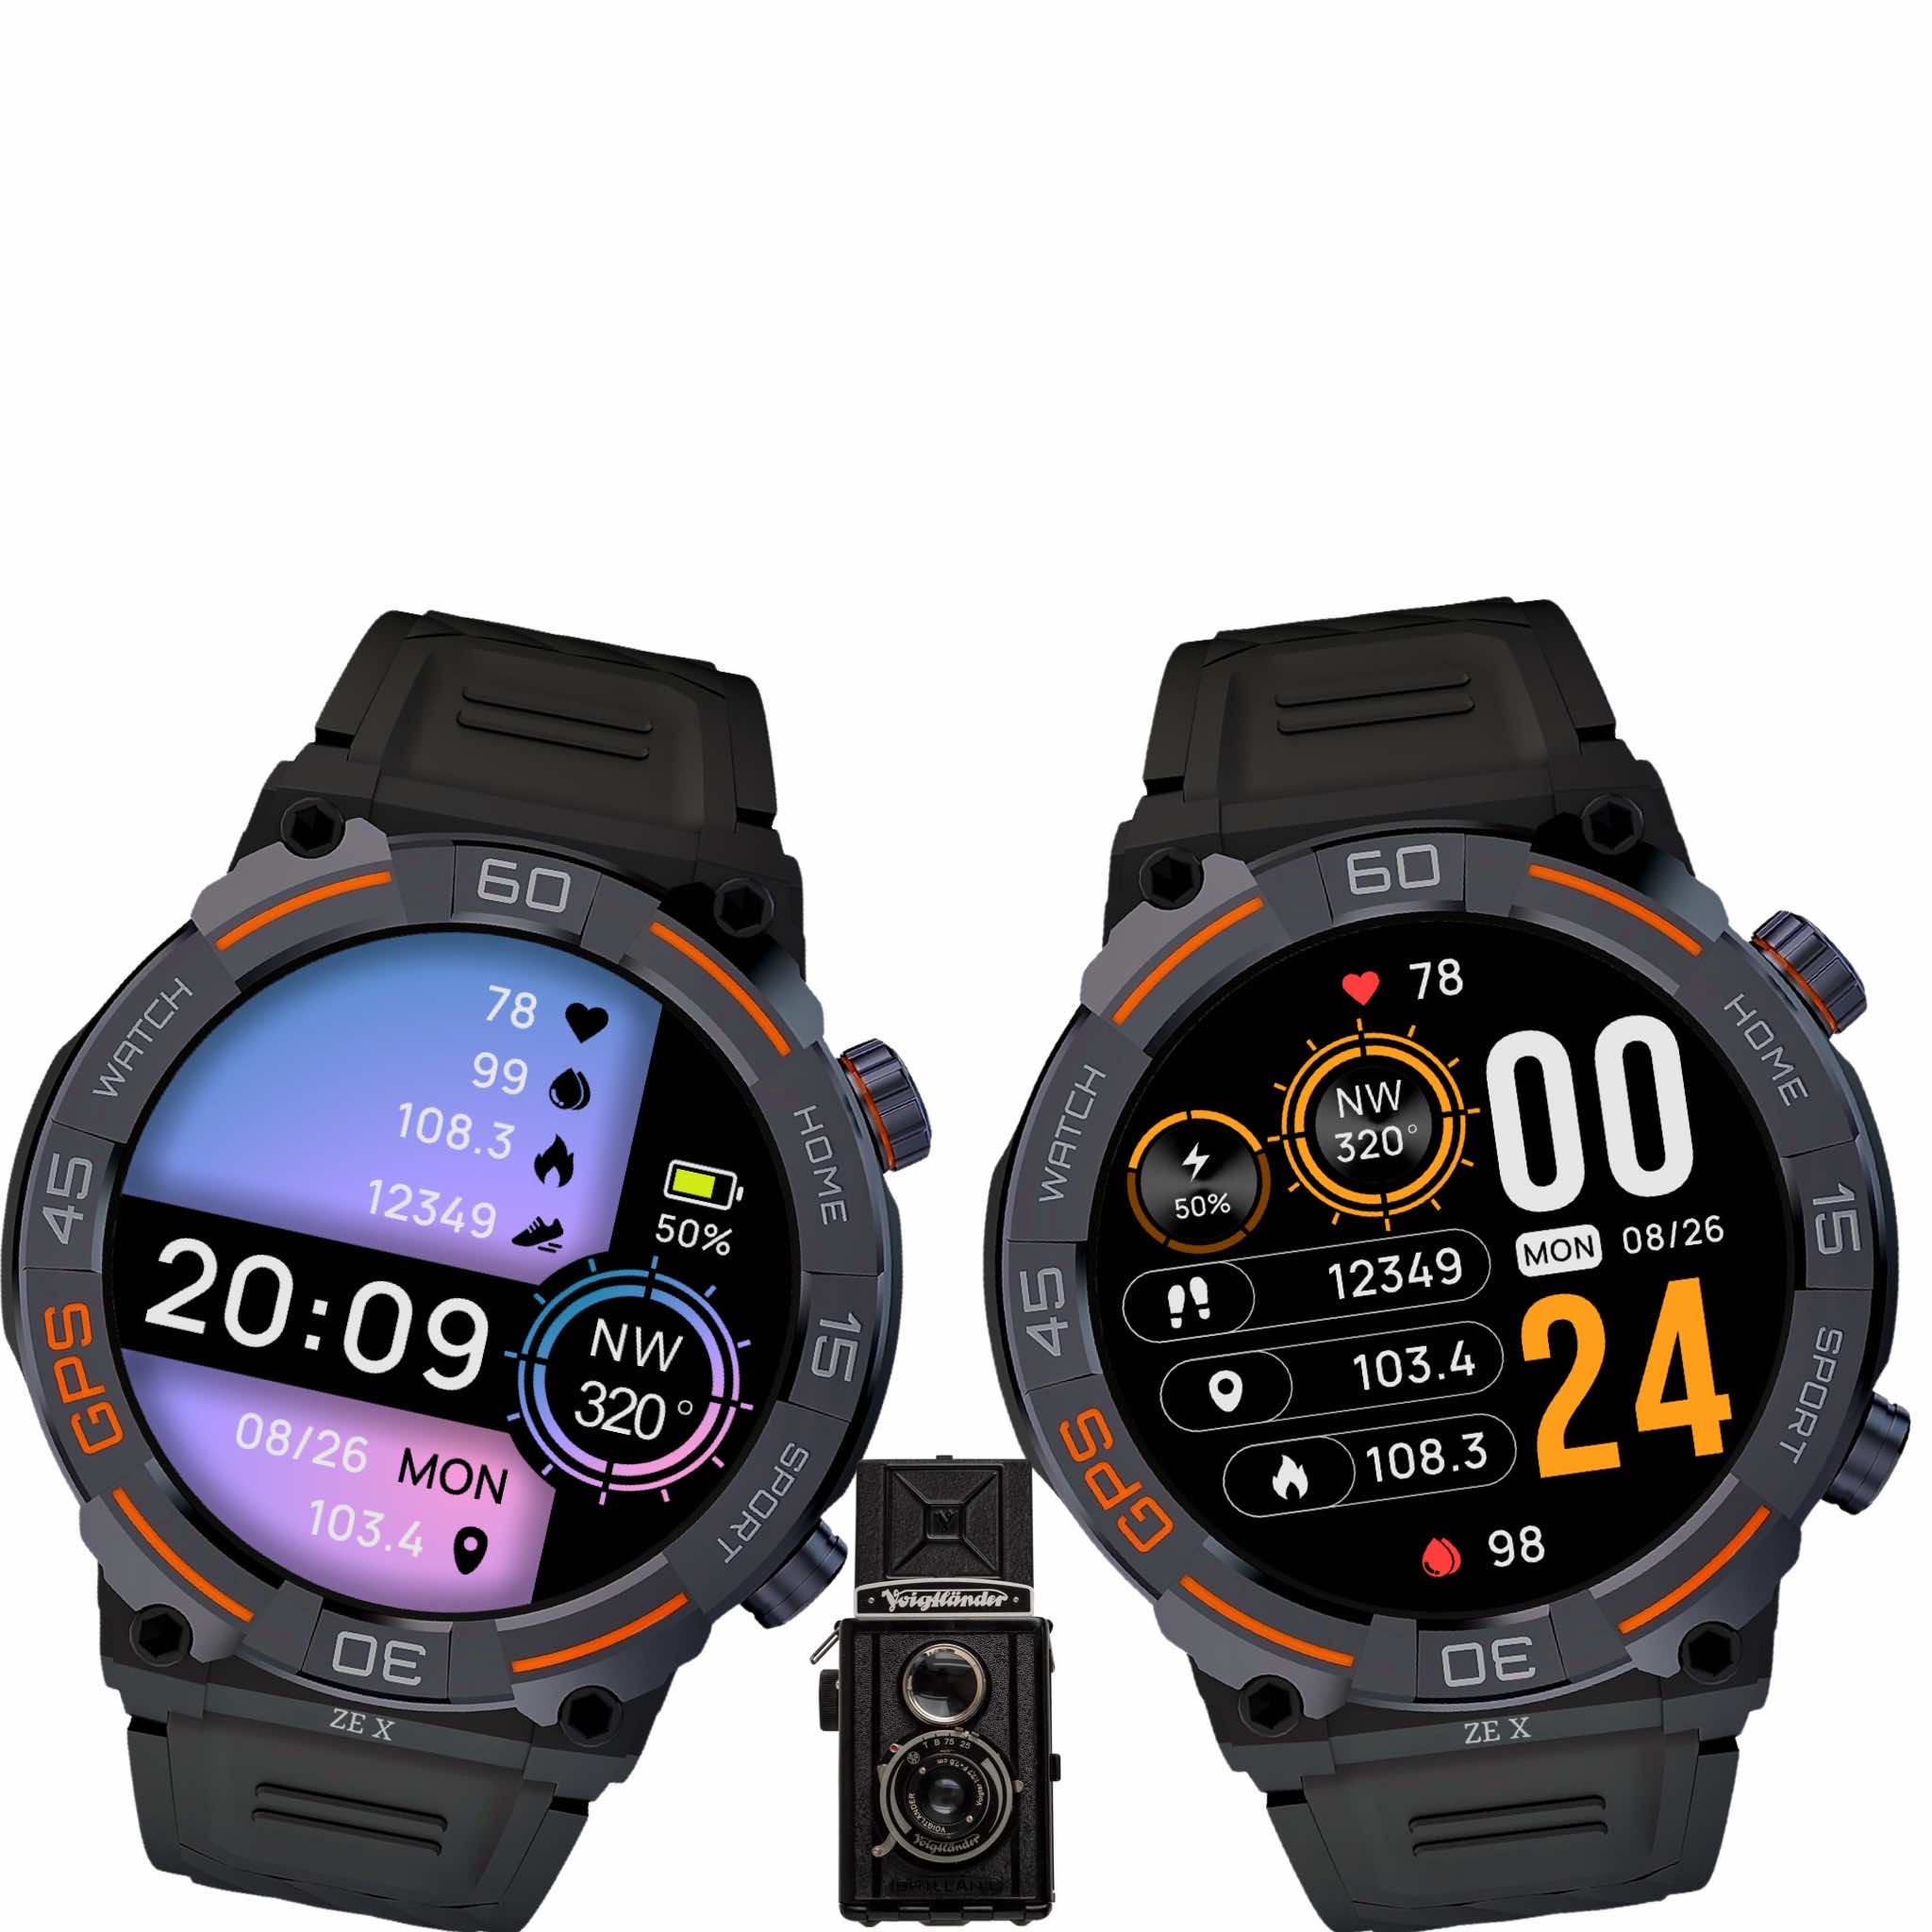 ZE X Smartwatch Faces